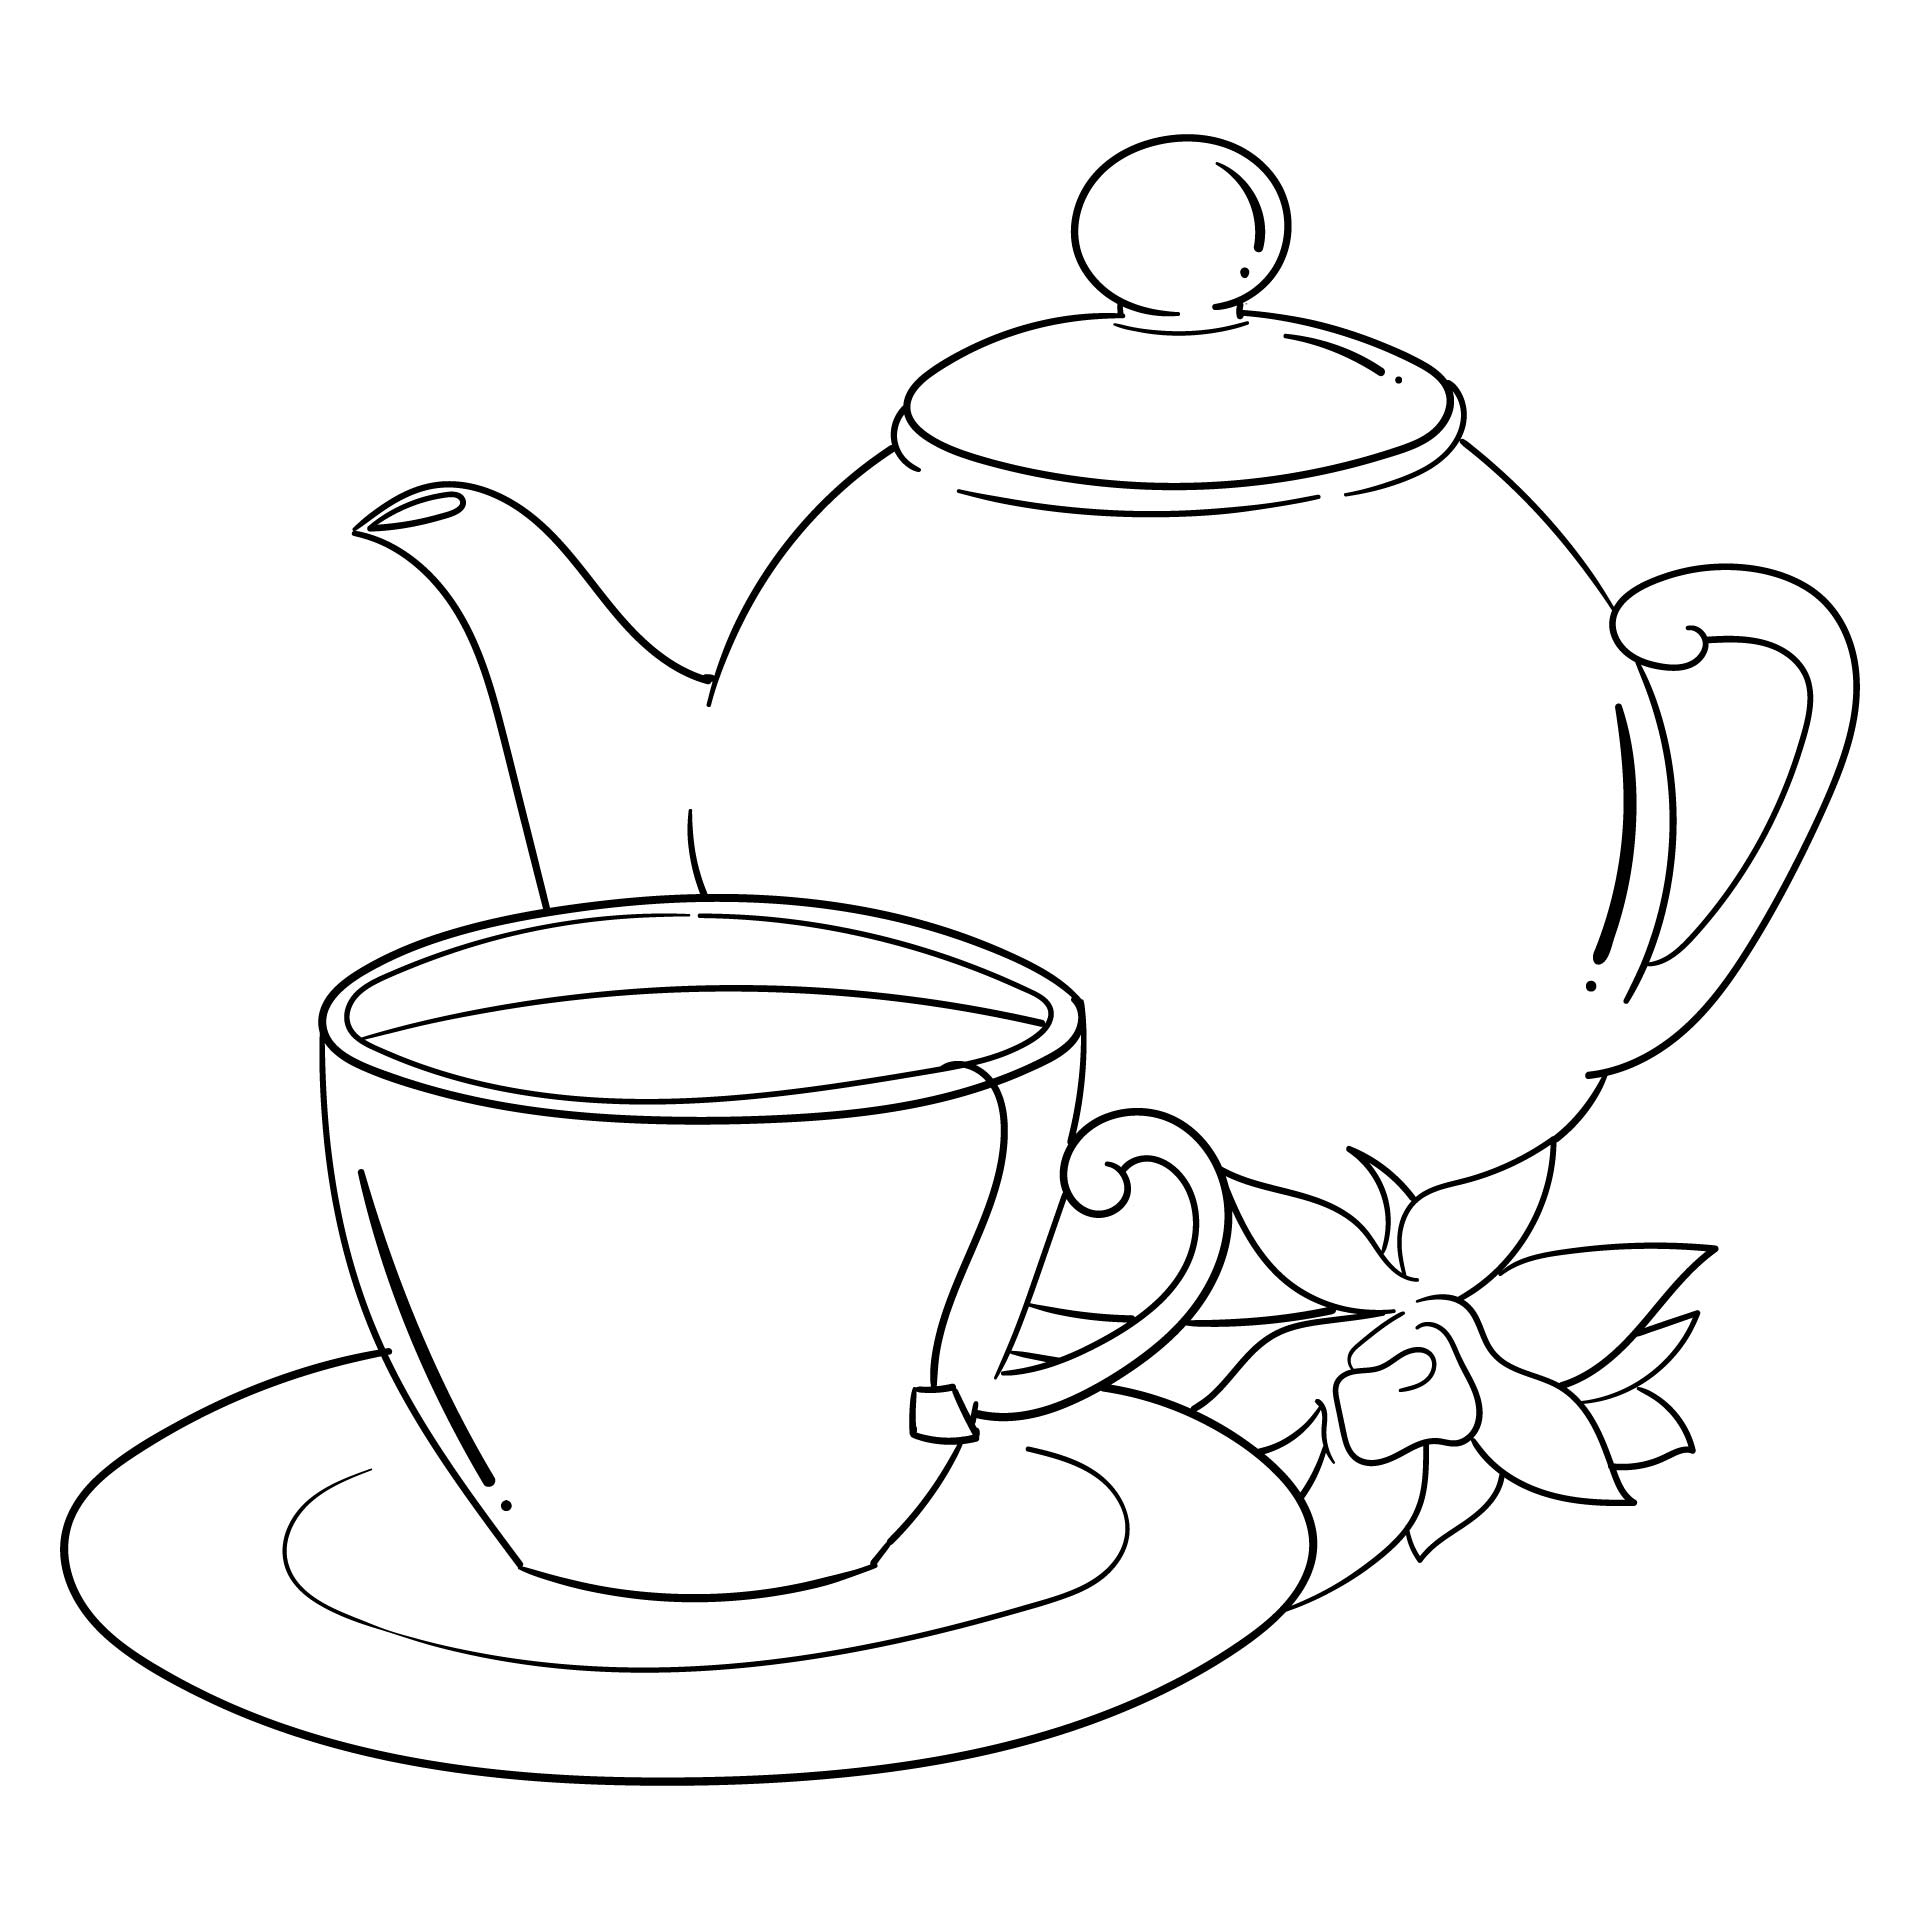 10 Best Tea Cup Template Free Printable - printablee.com